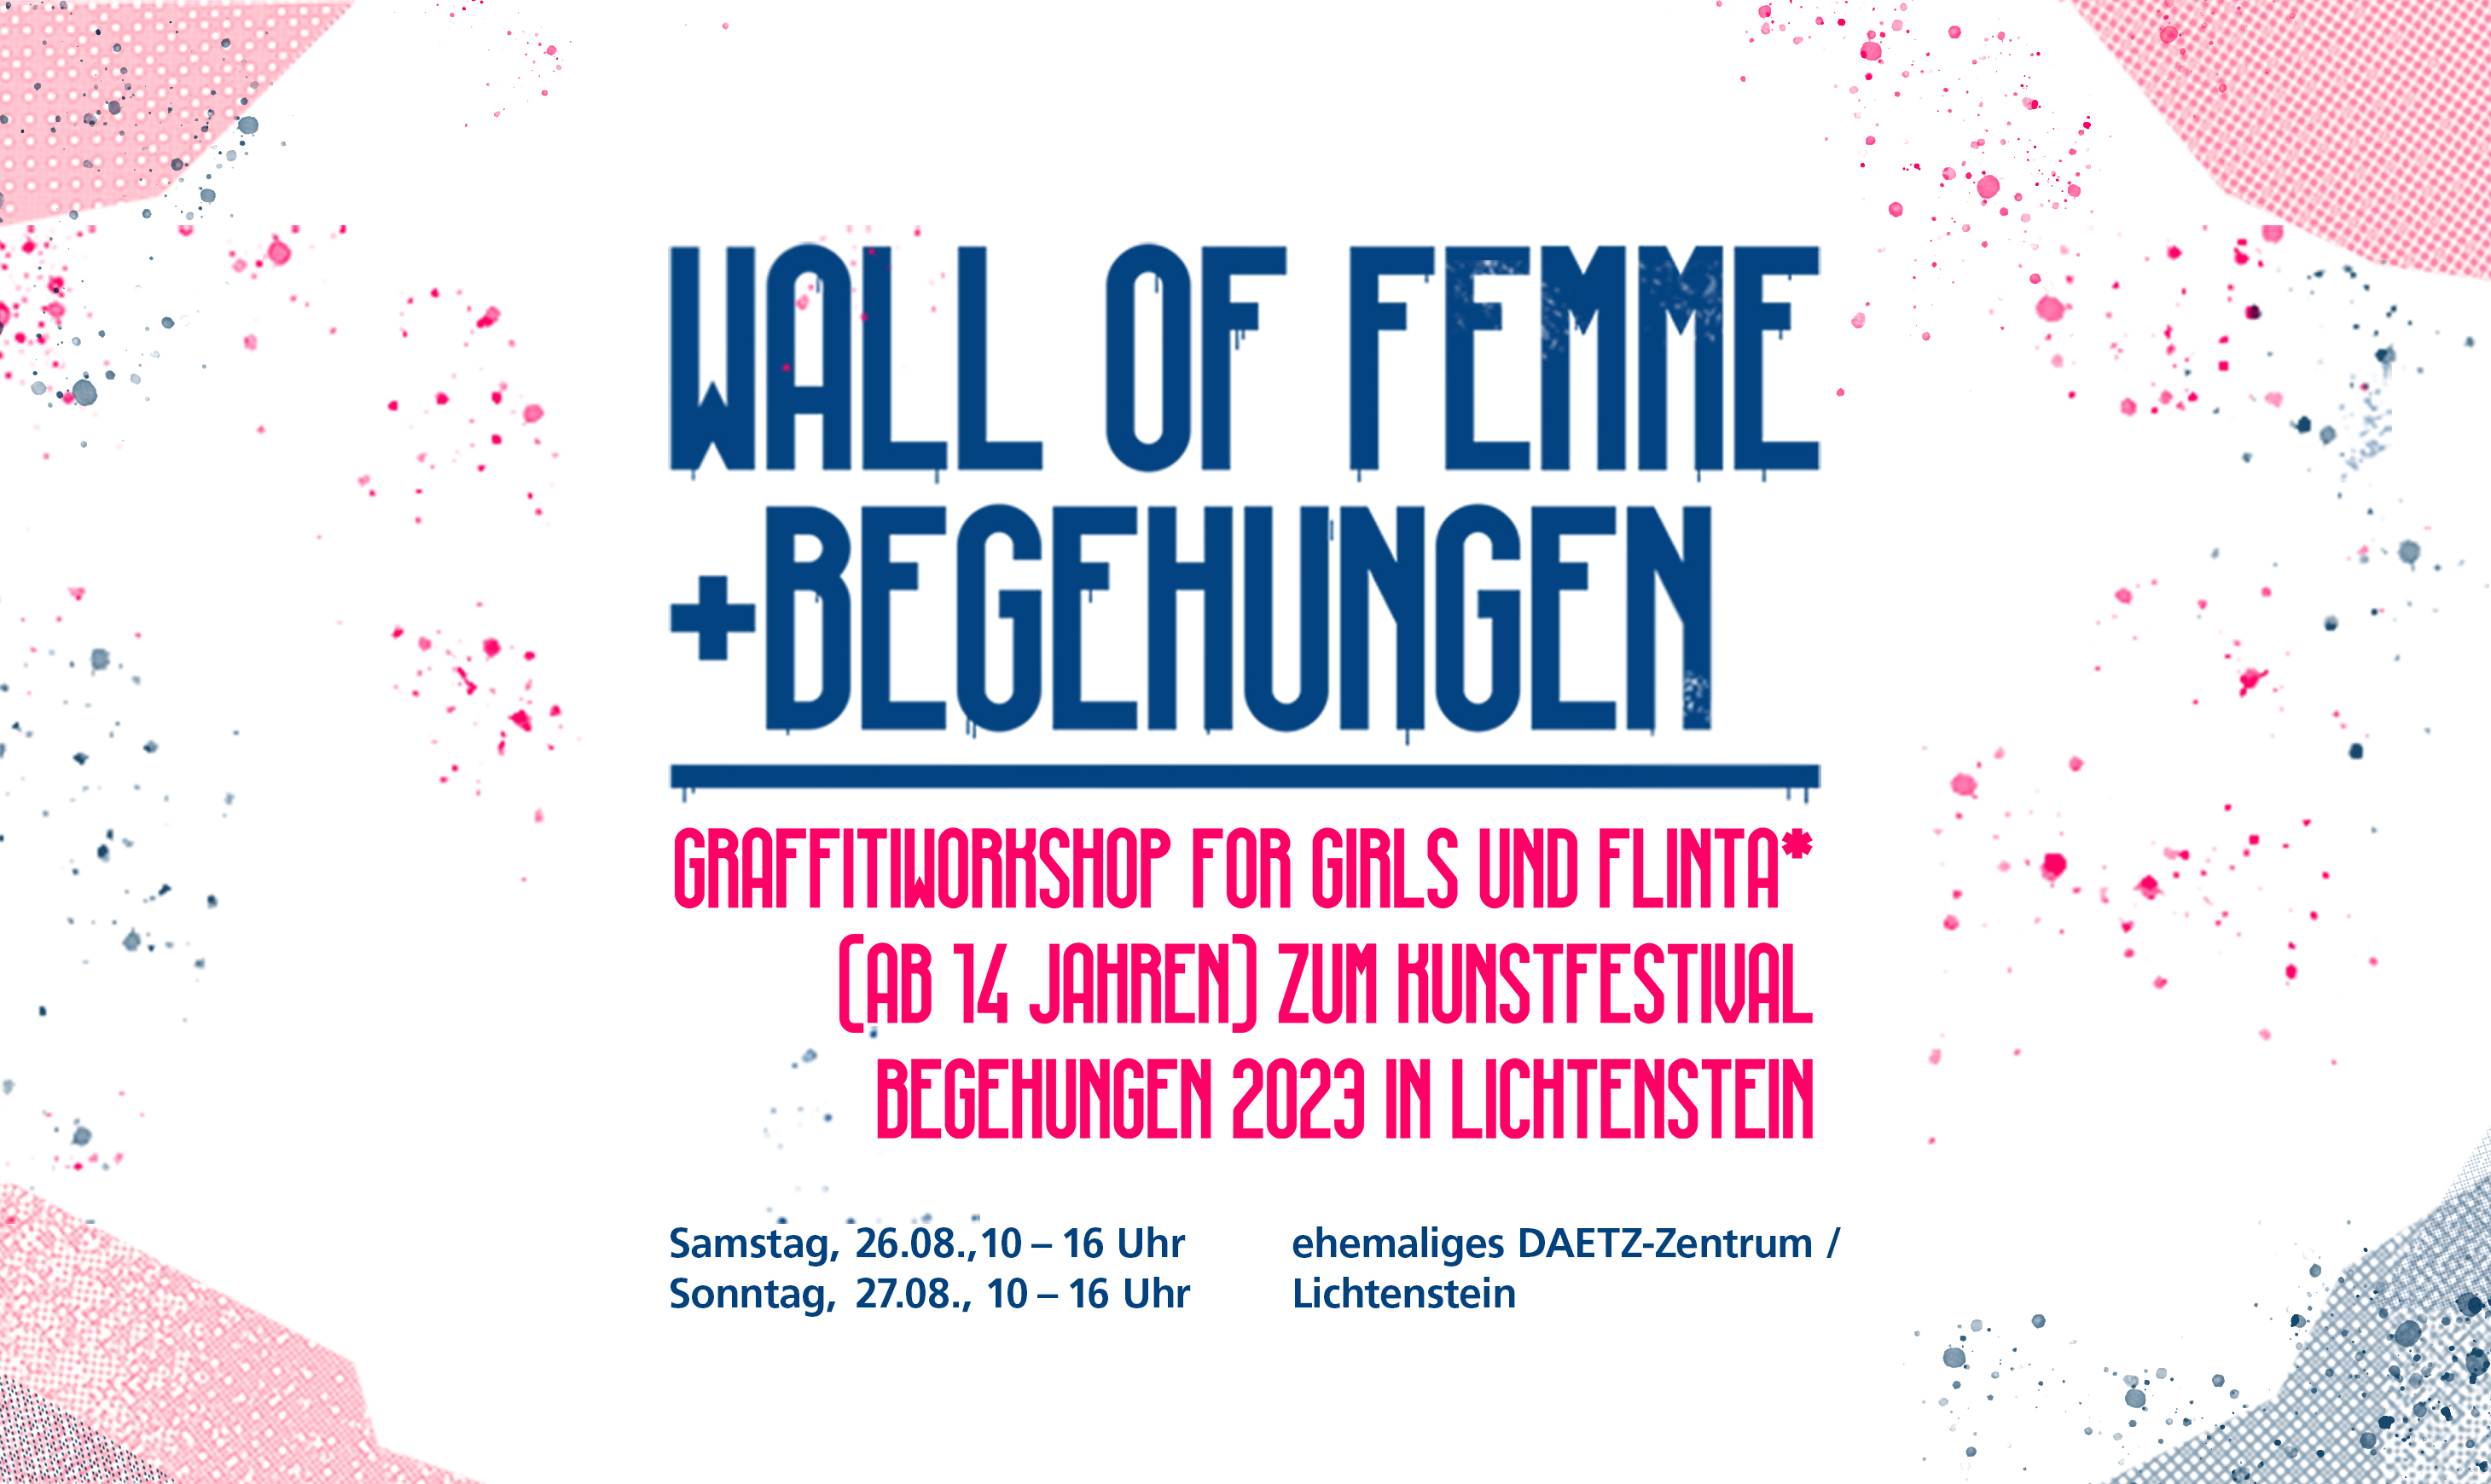 Wall OF FEMME + BEGEHUNGEN  - 01